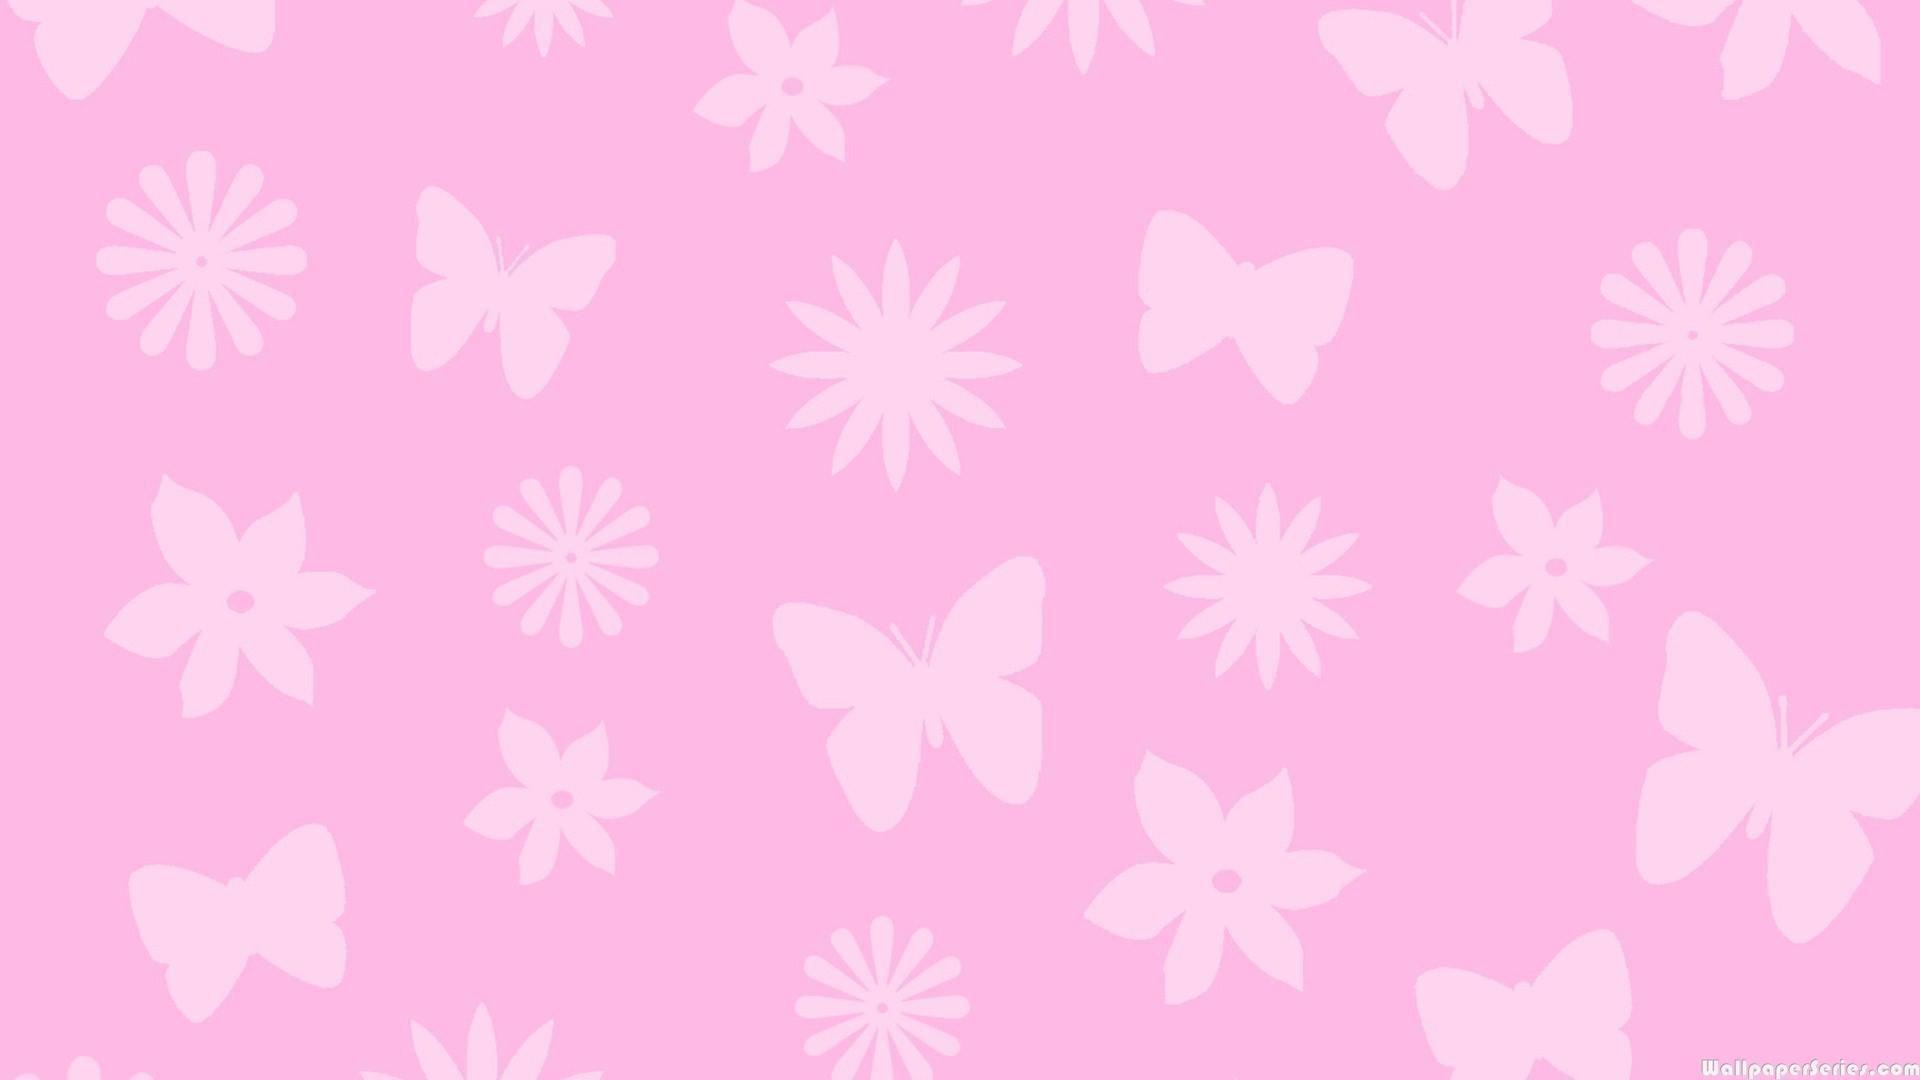 Cute Butterfly Wallpaper. HD Wallpaper. Butterfly